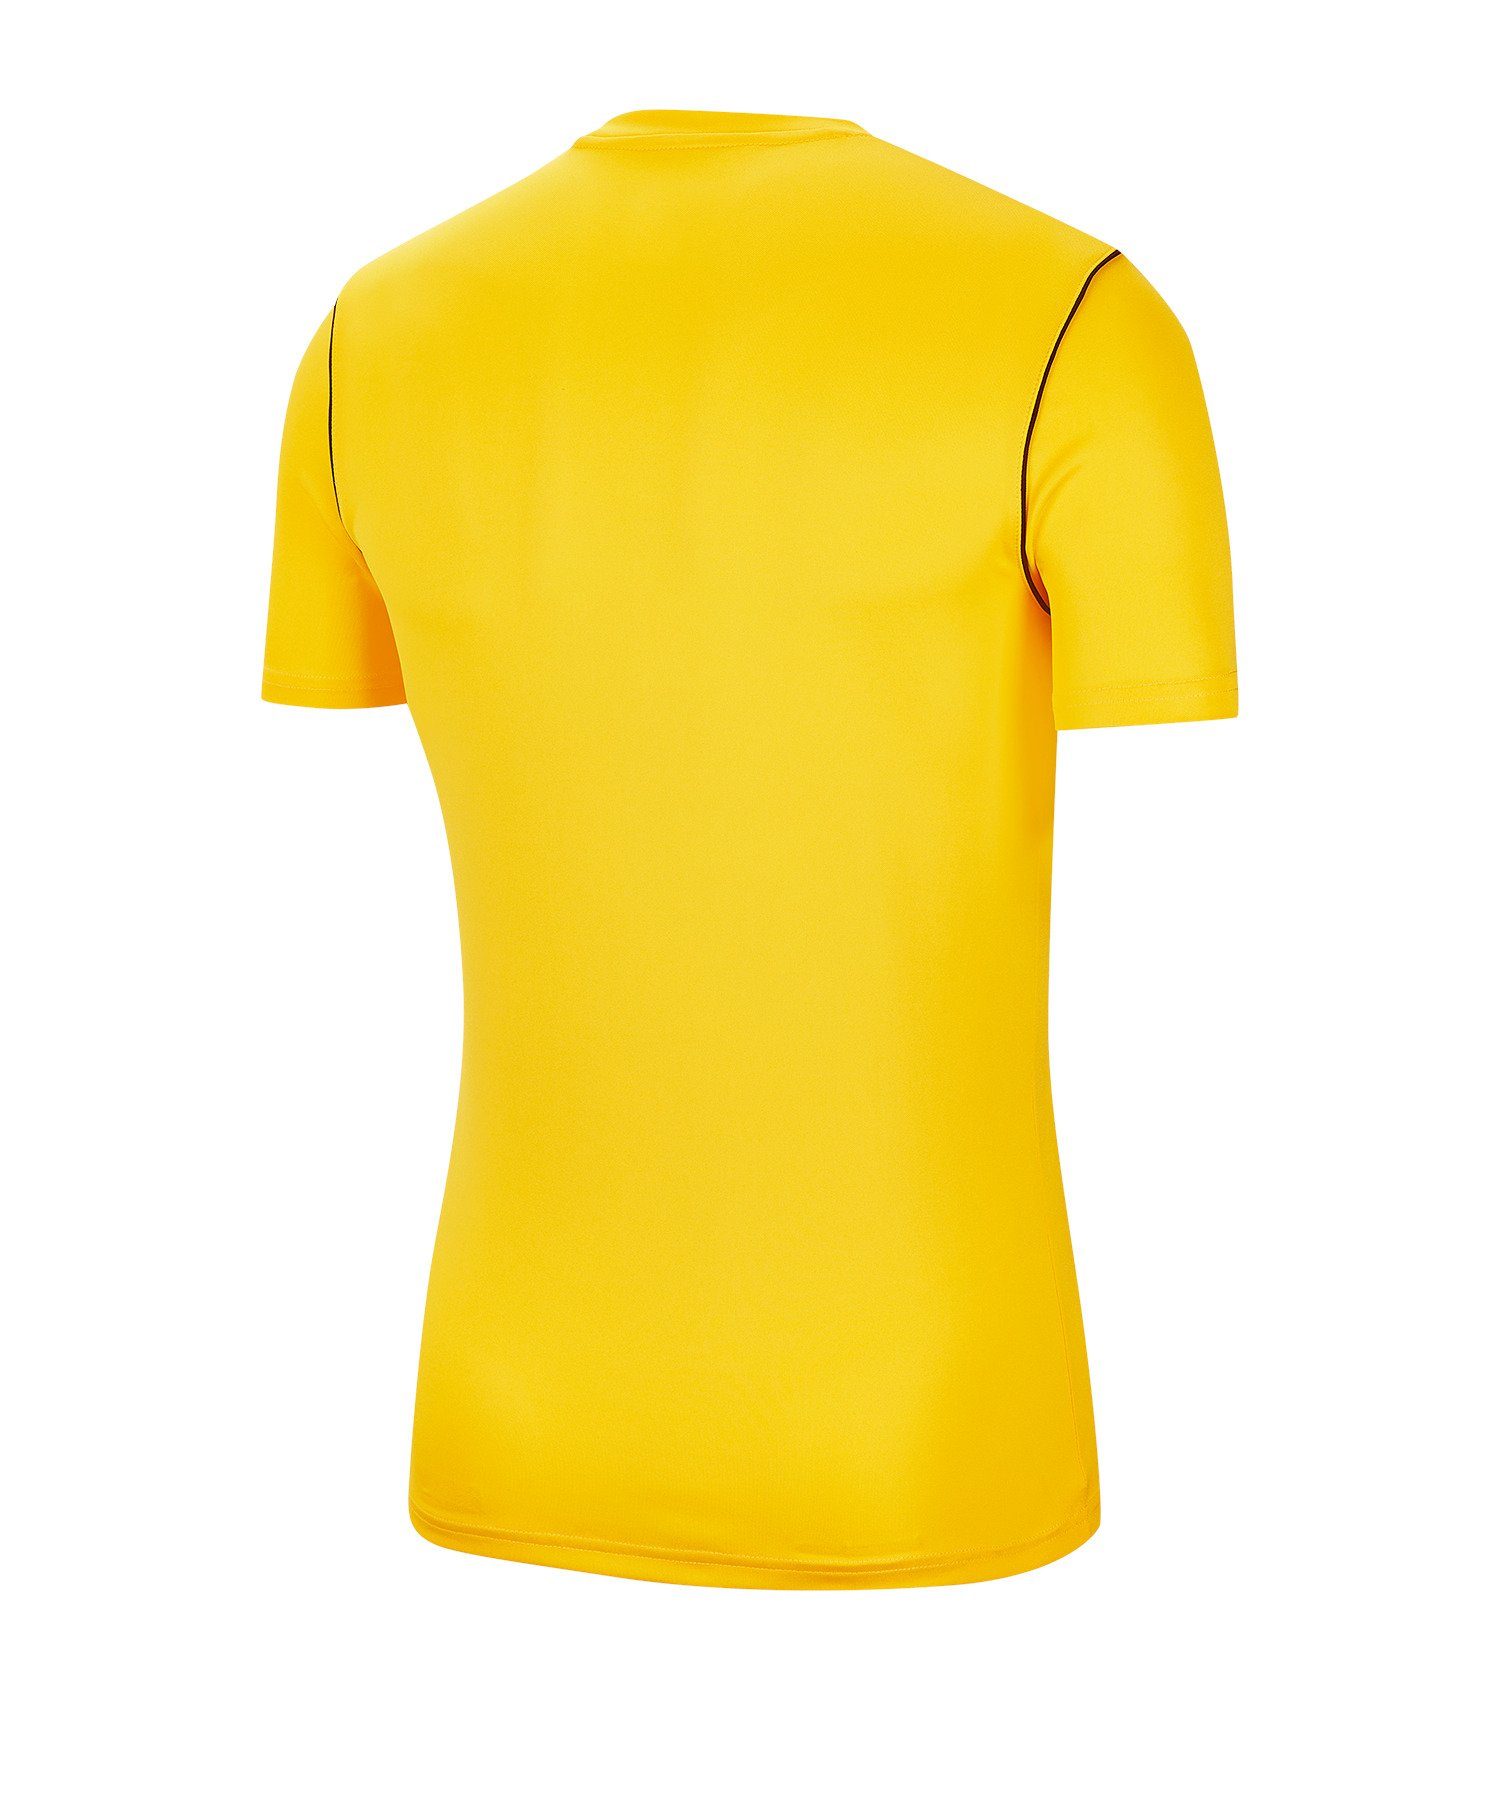 Shirt gelb Nike Training T-Shirt default Park 20